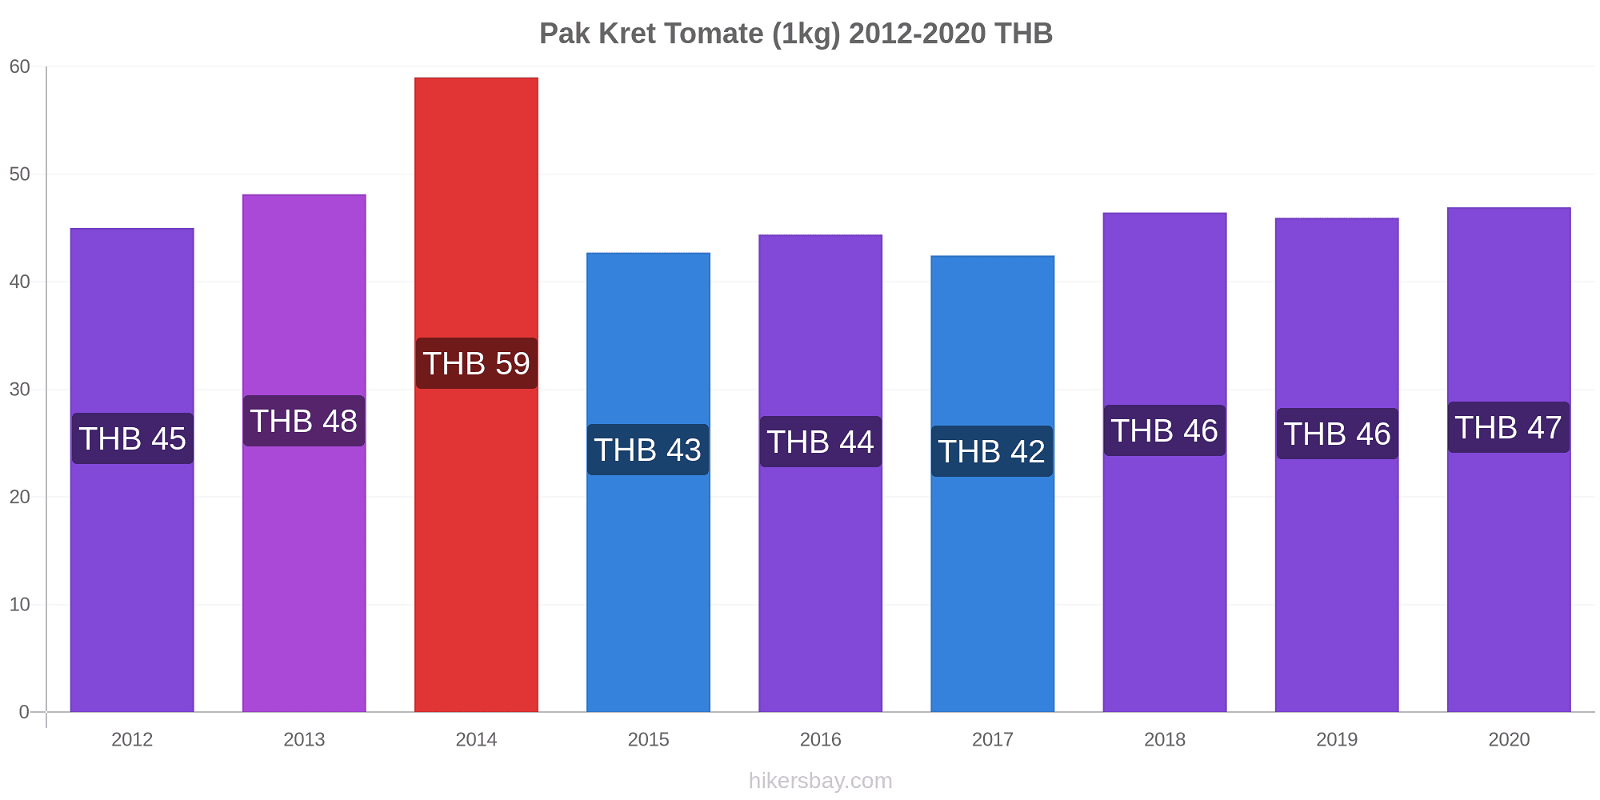 Pak Kret variação de preço Tomate (1kg) hikersbay.com